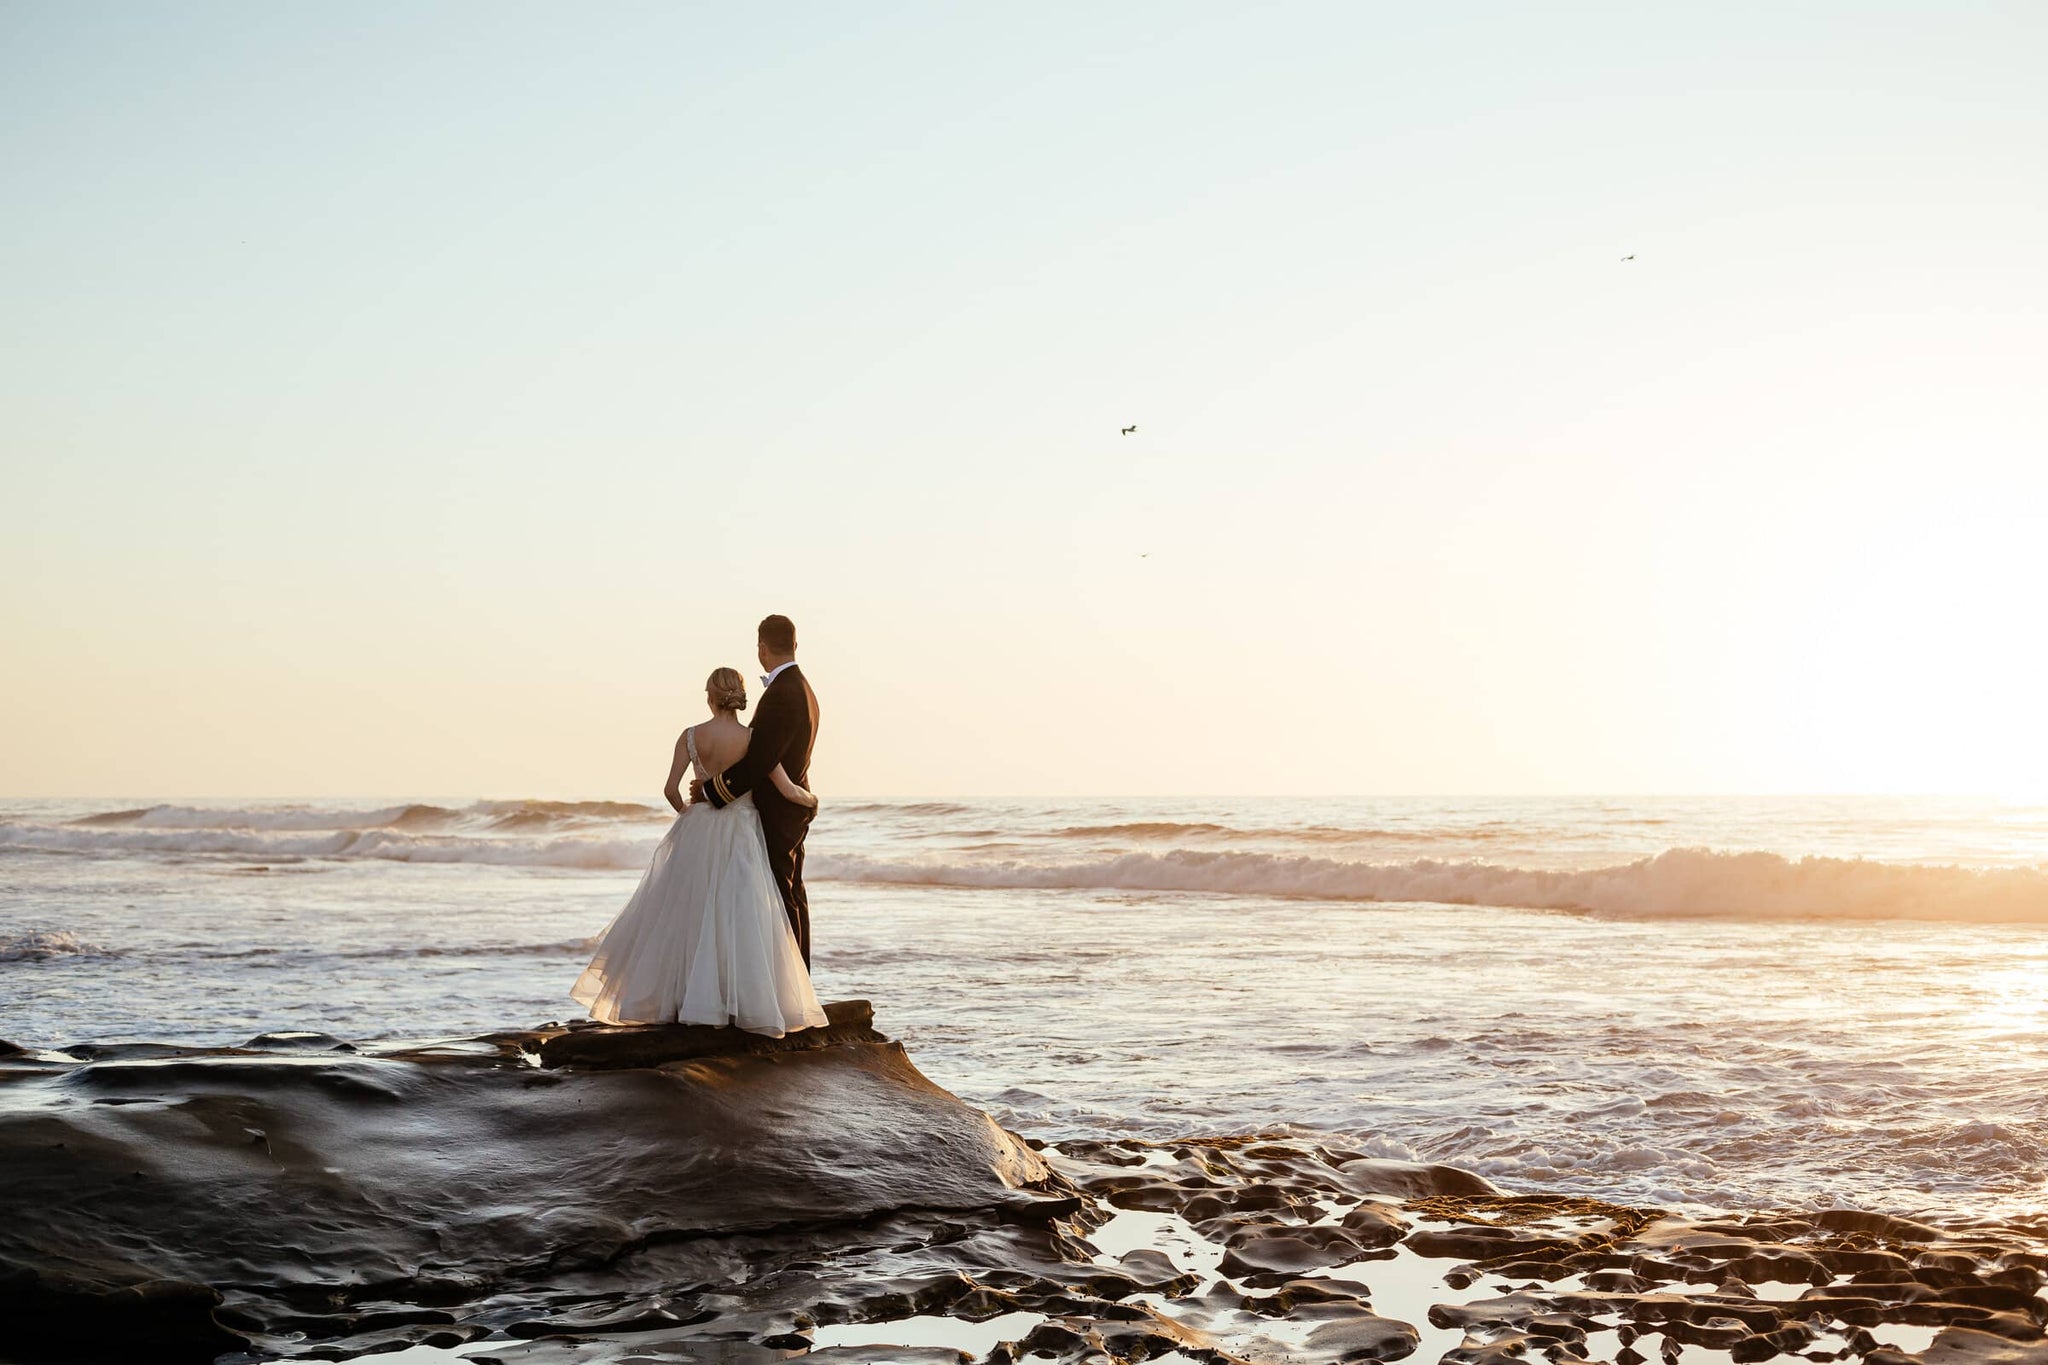 wedding photography - wedding photographer - bridal photography - marriage photography